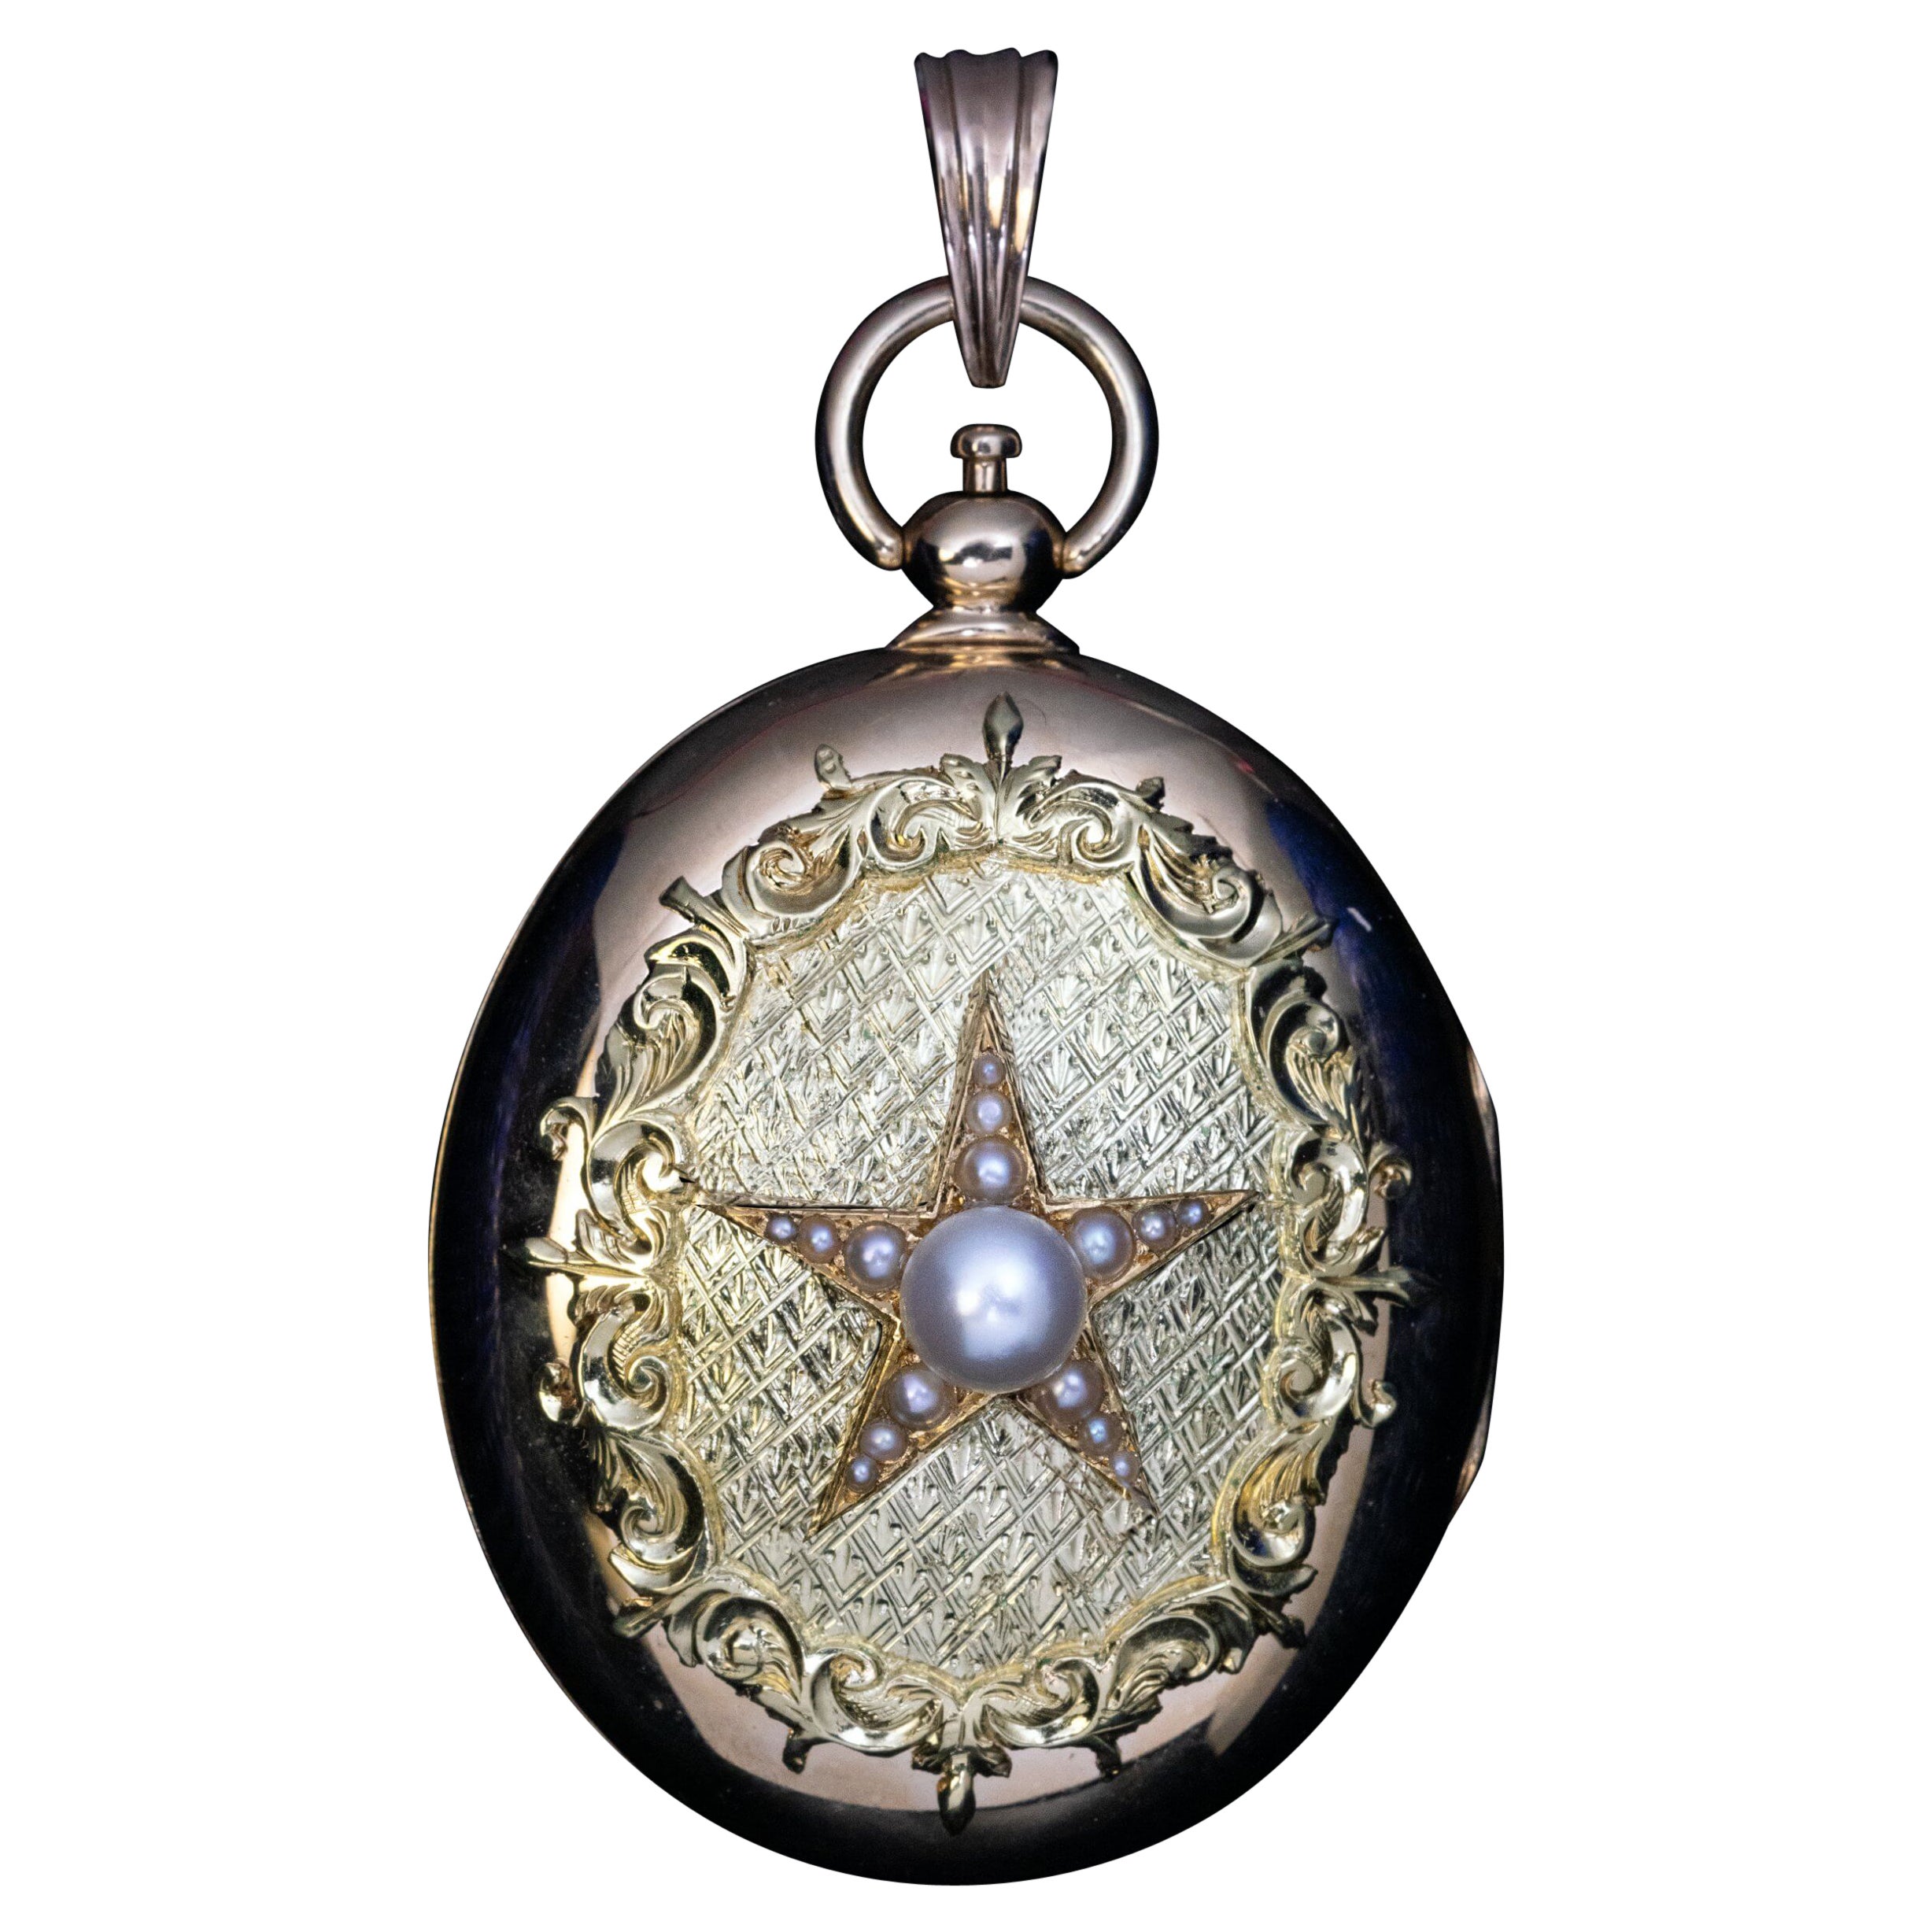 Antique 19th Century Star Locket Pendant